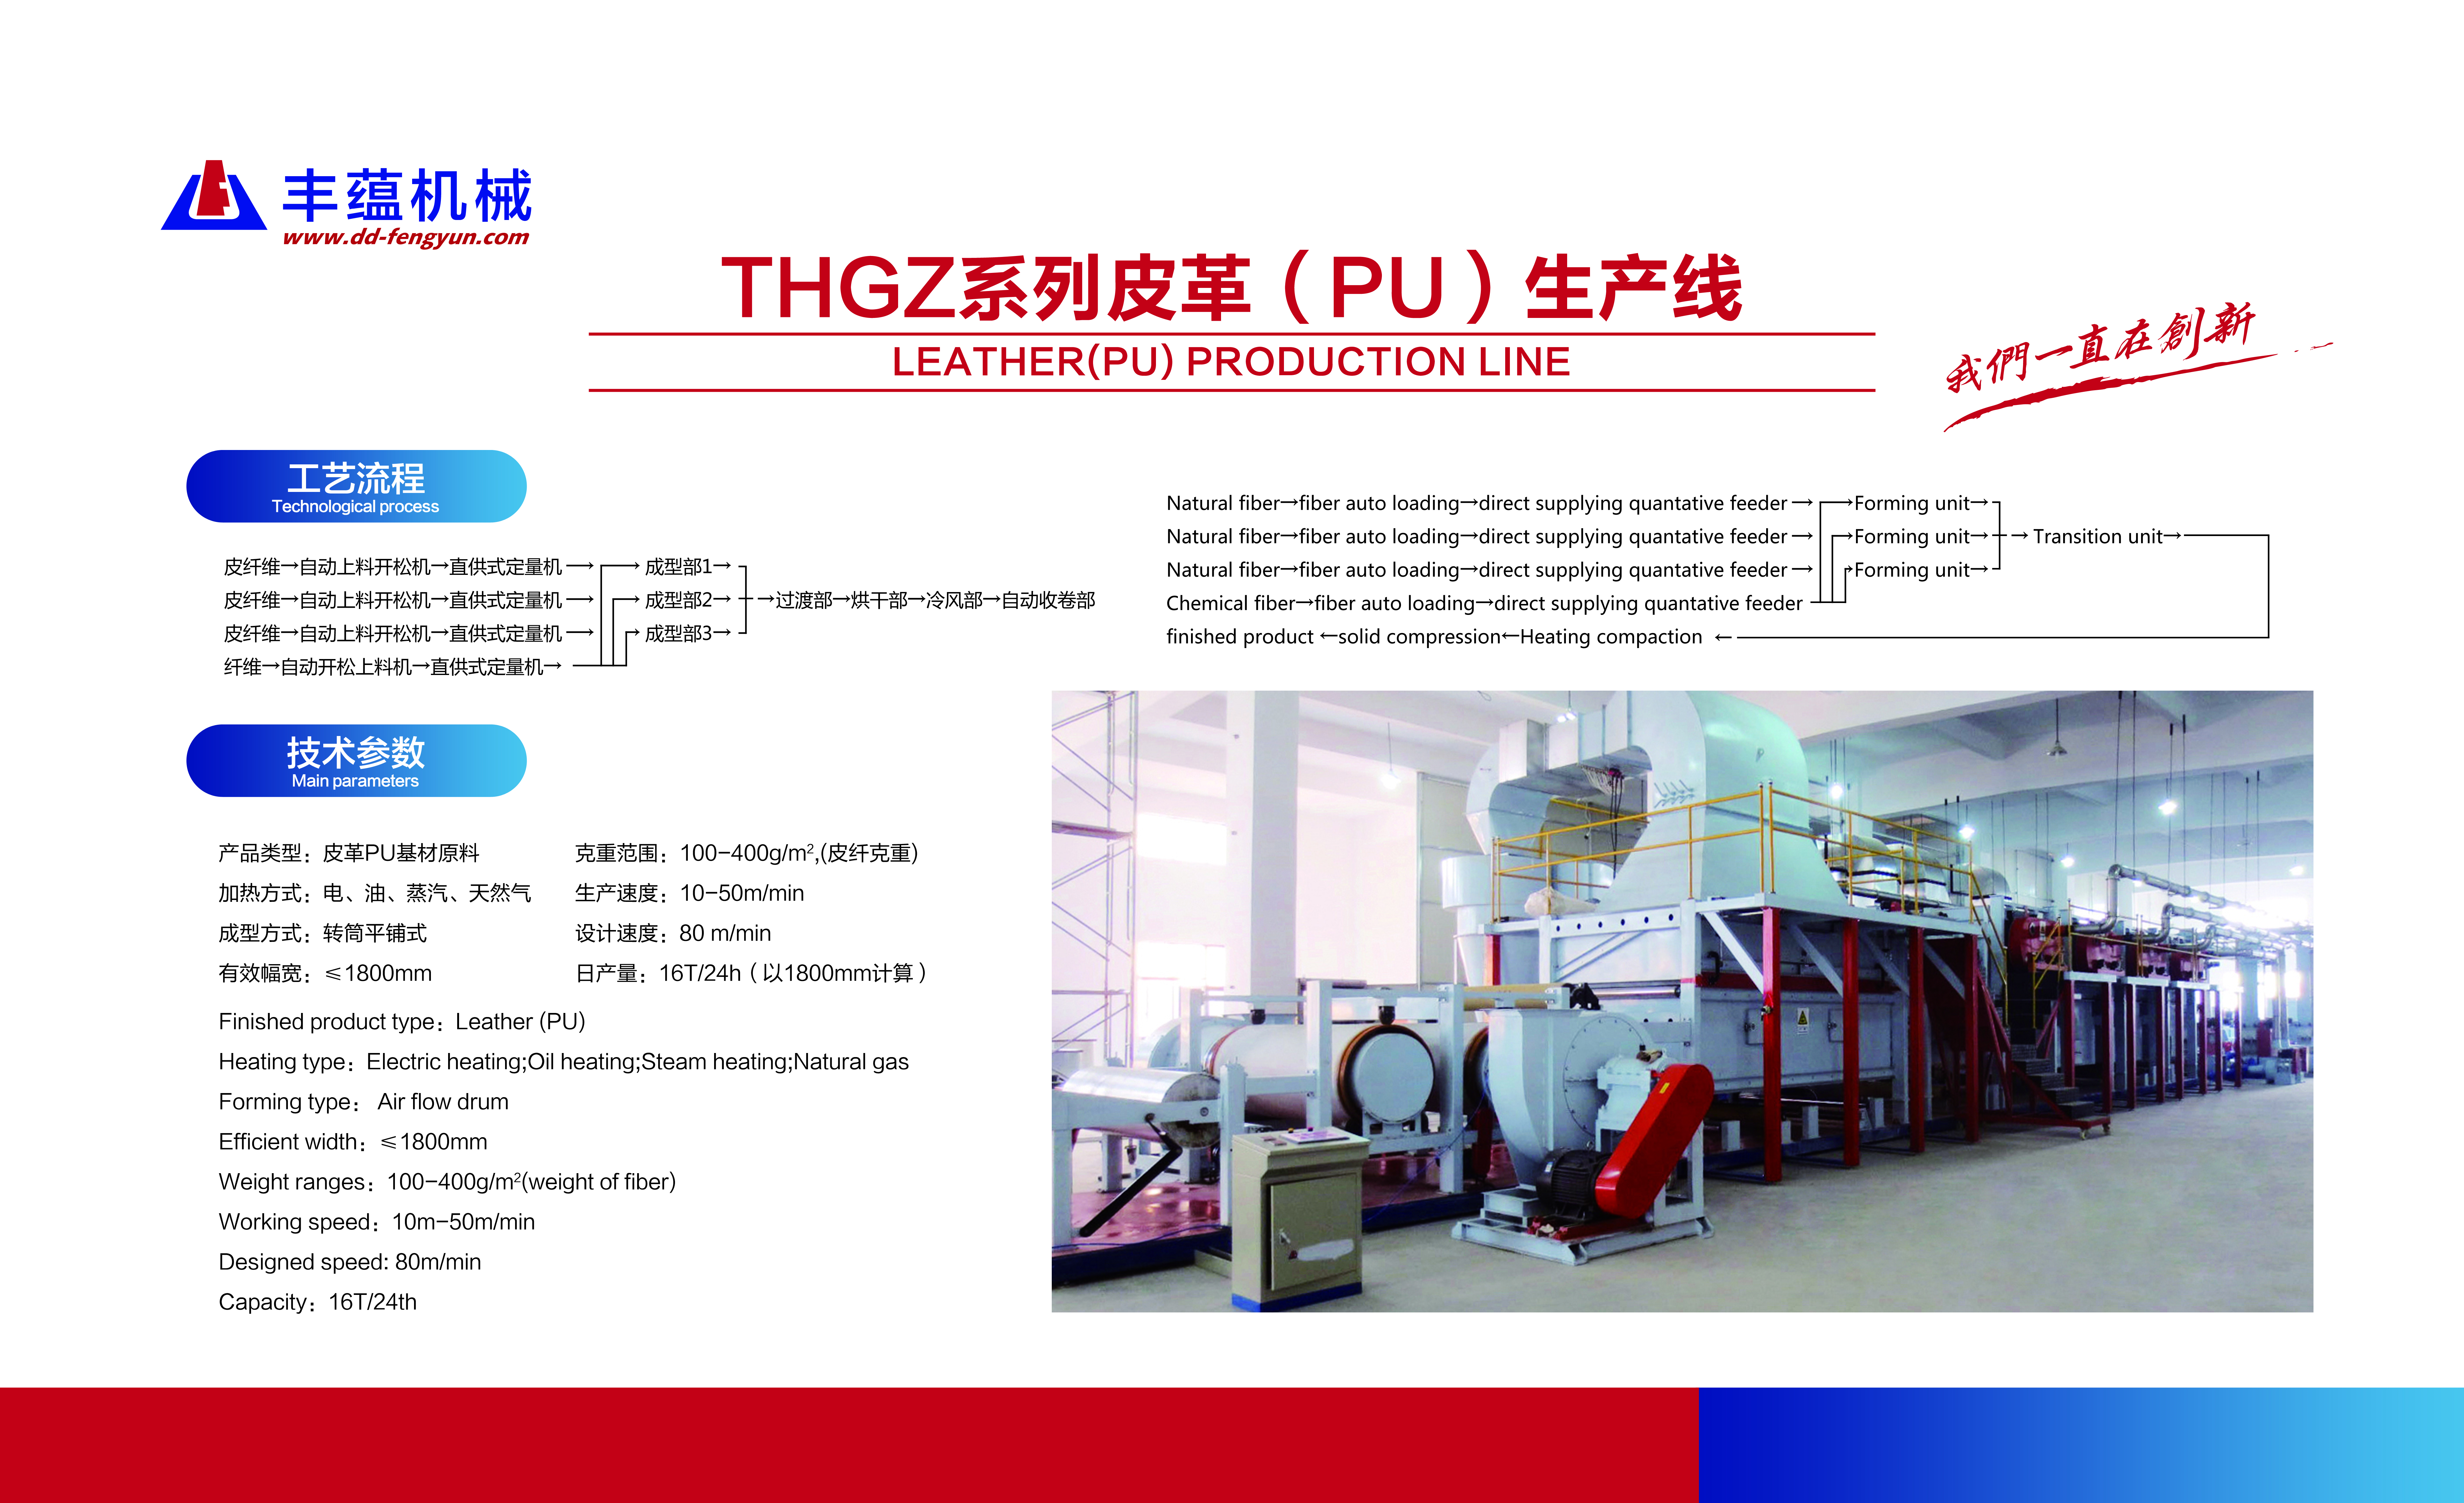 THGZ系列皮革（PU）生产线